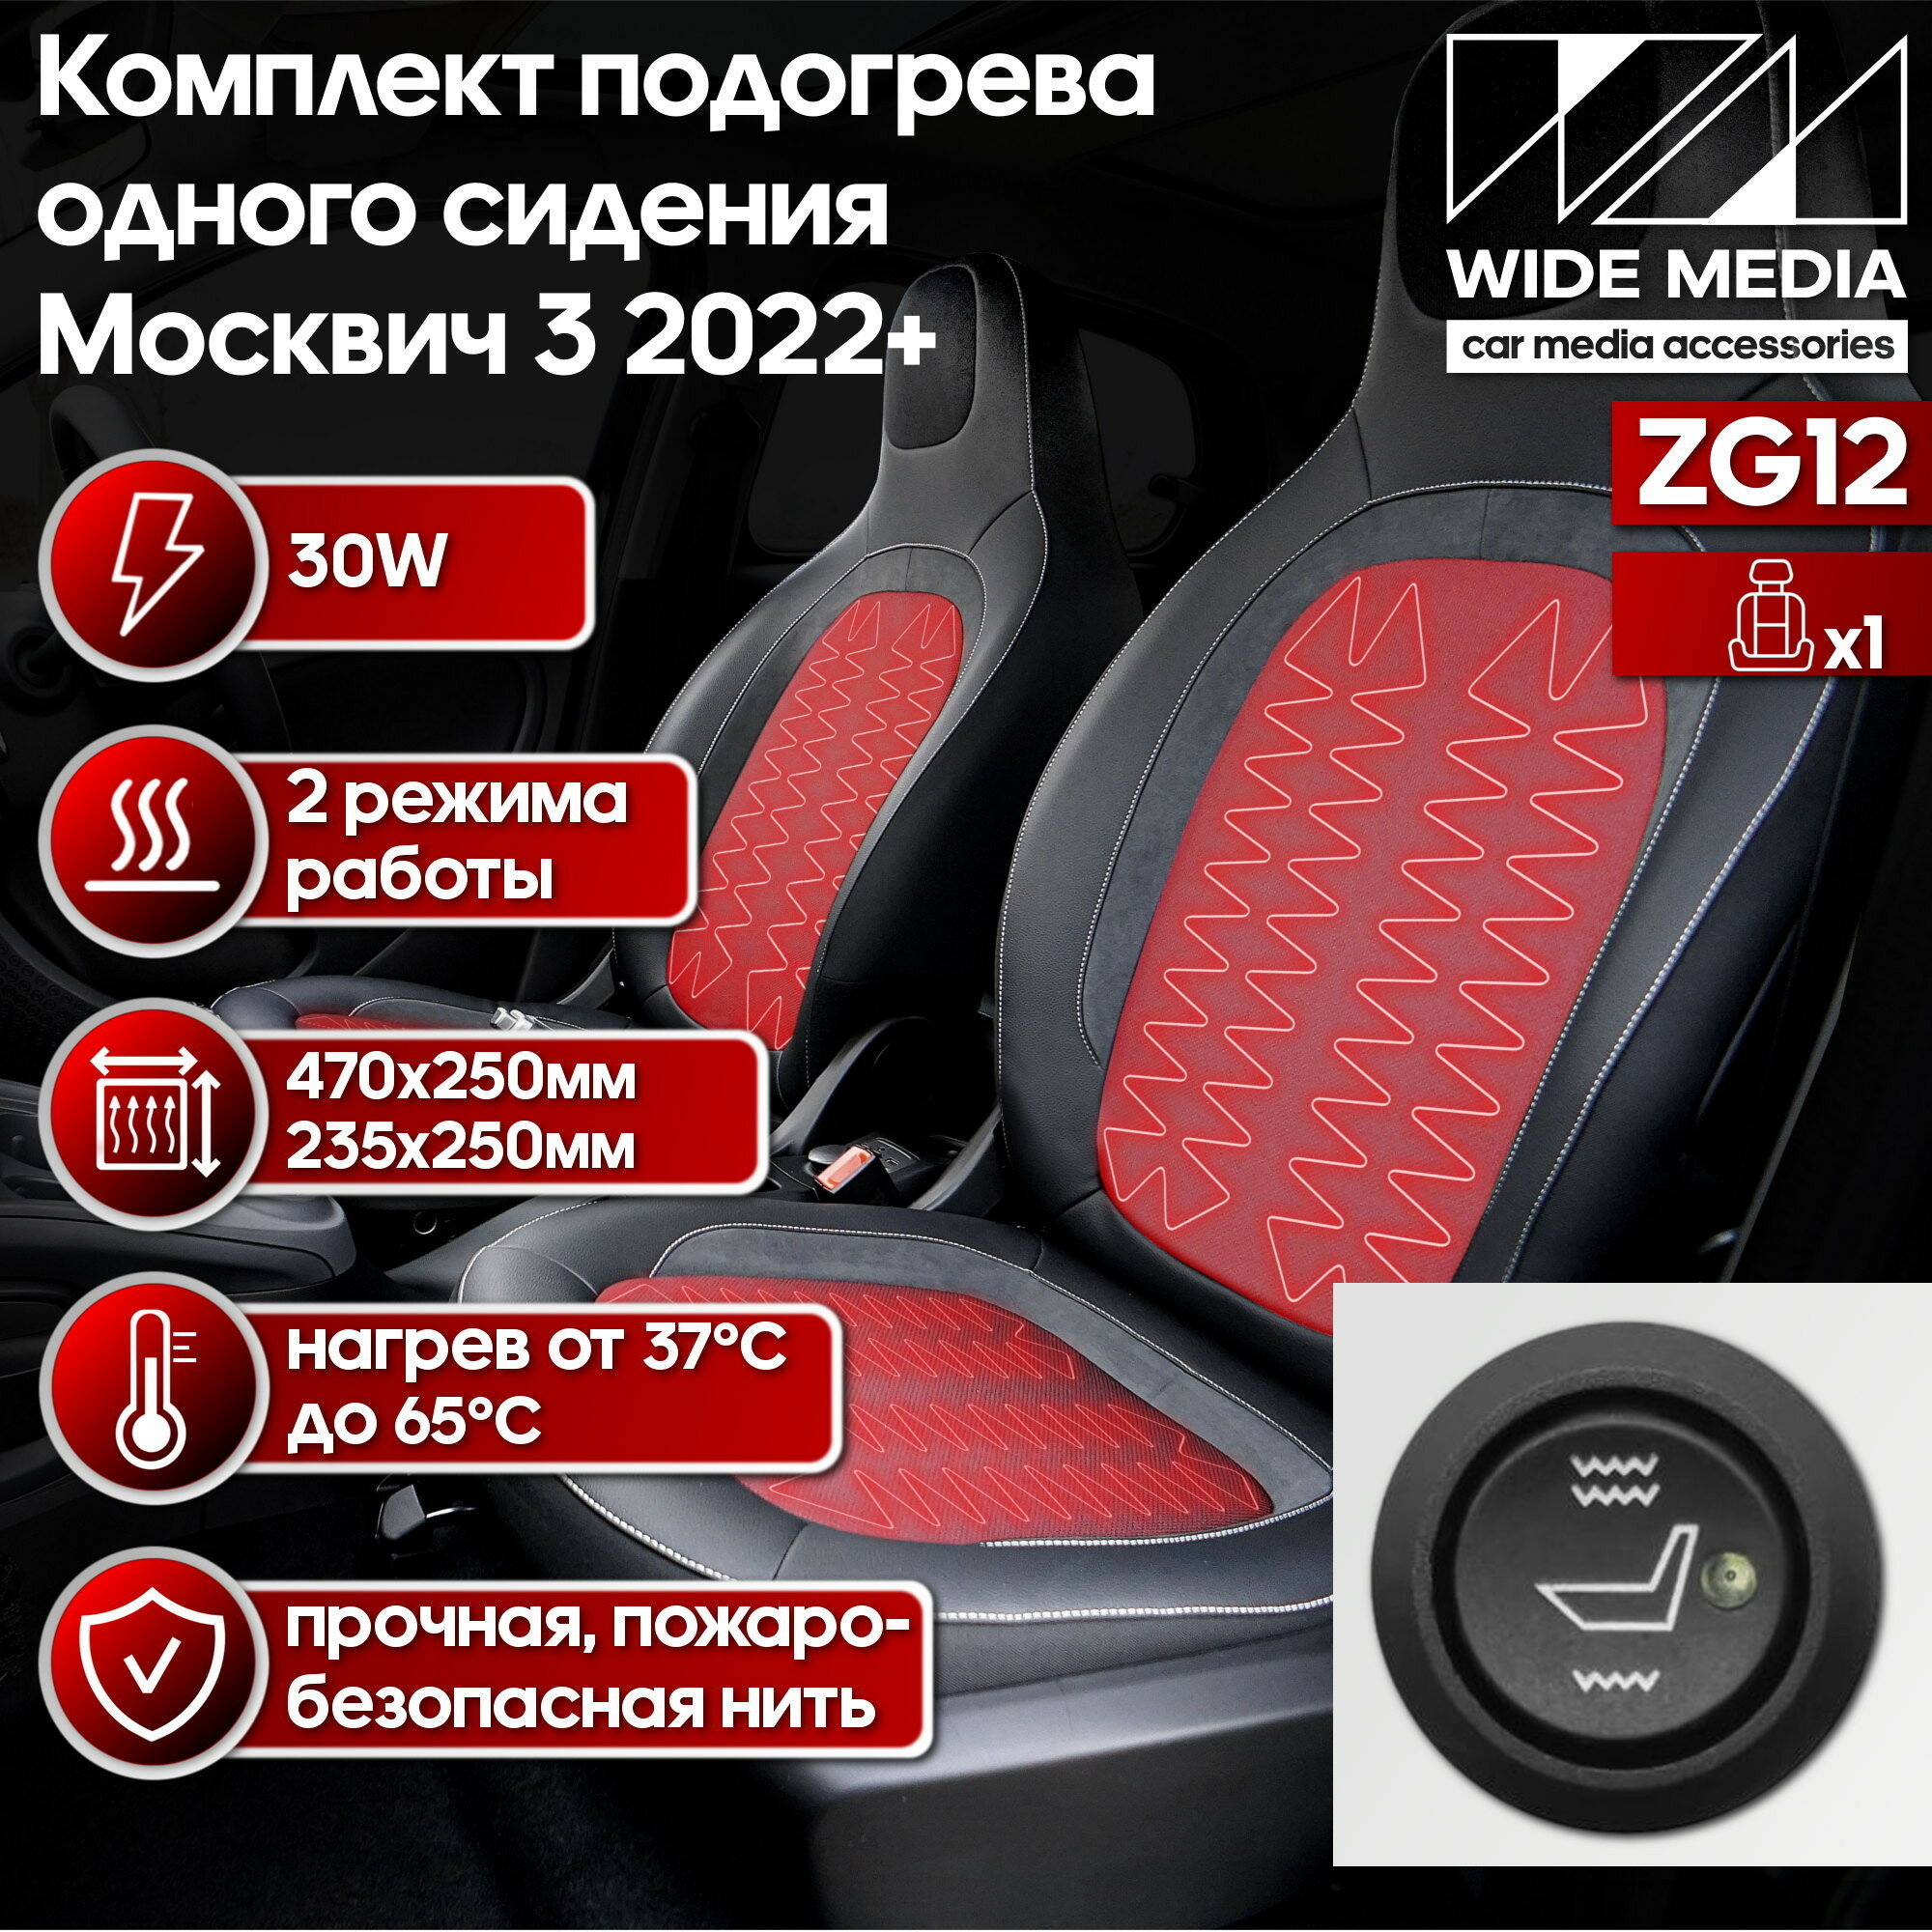 Подогрев сидений! Комплект подогрева одного сидения для Москвич 3 2022+ Wide Media ZG12